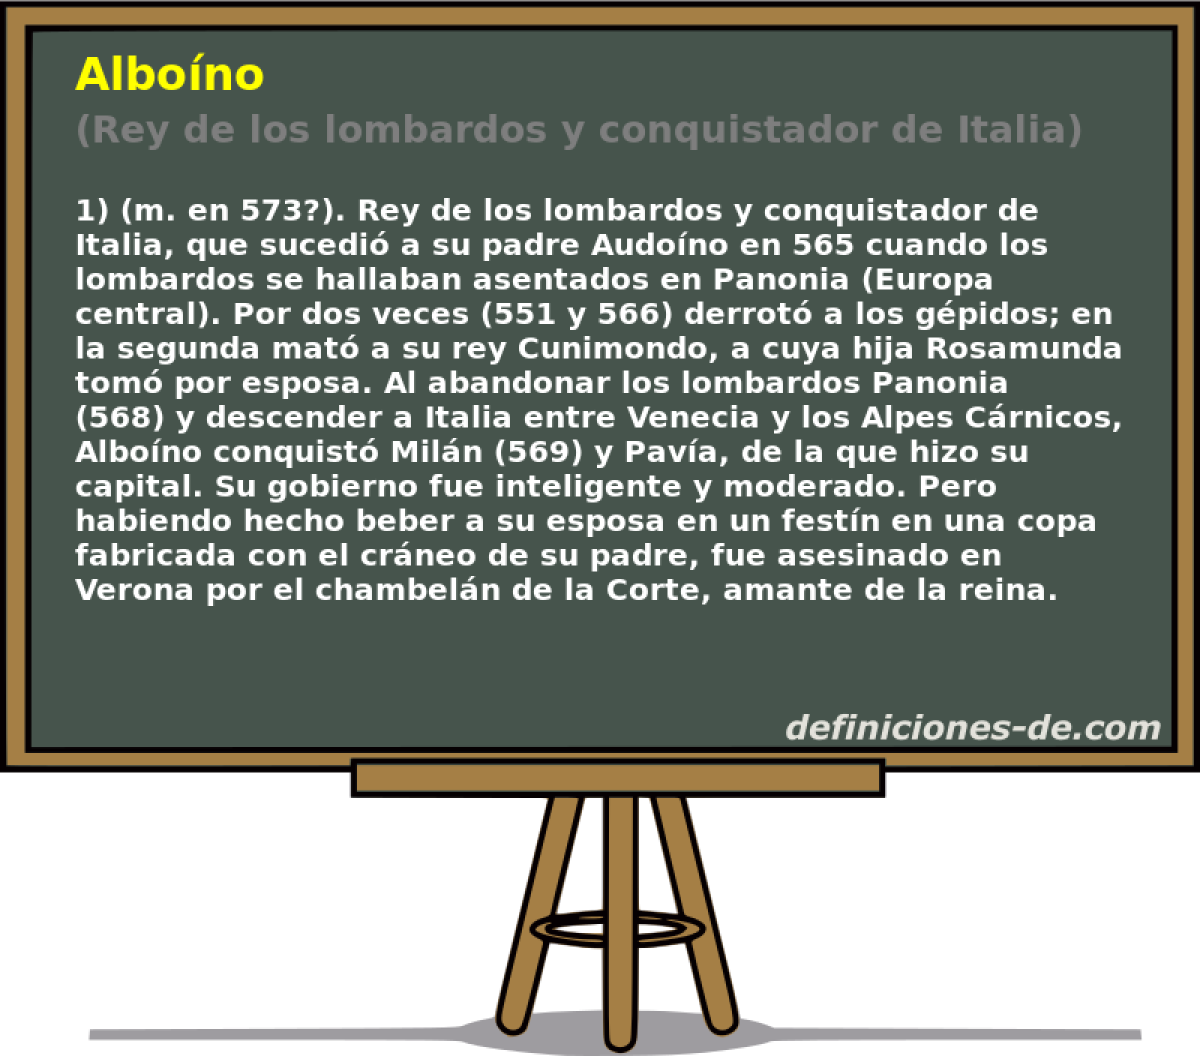 Albono (Rey de los lombardos y conquistador de Italia)